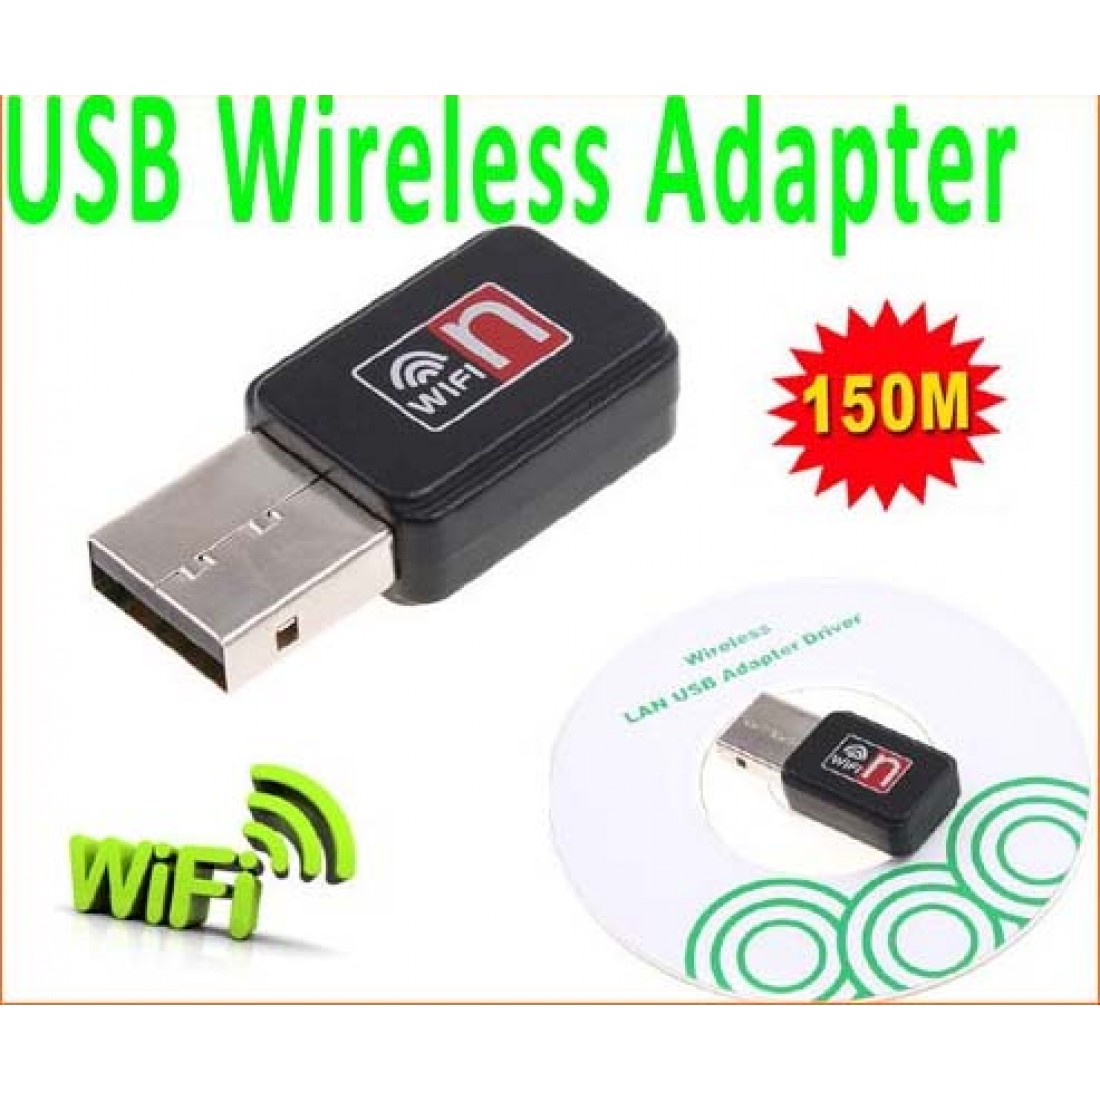 Драйвера 802.11 n usb wireless lan card. Ralink 802.11n USB Wireless lan Card. USB WIFI адаптер rt7601. Флешка вифи 150м. 950m Wireless-n Mini USB Adapter.